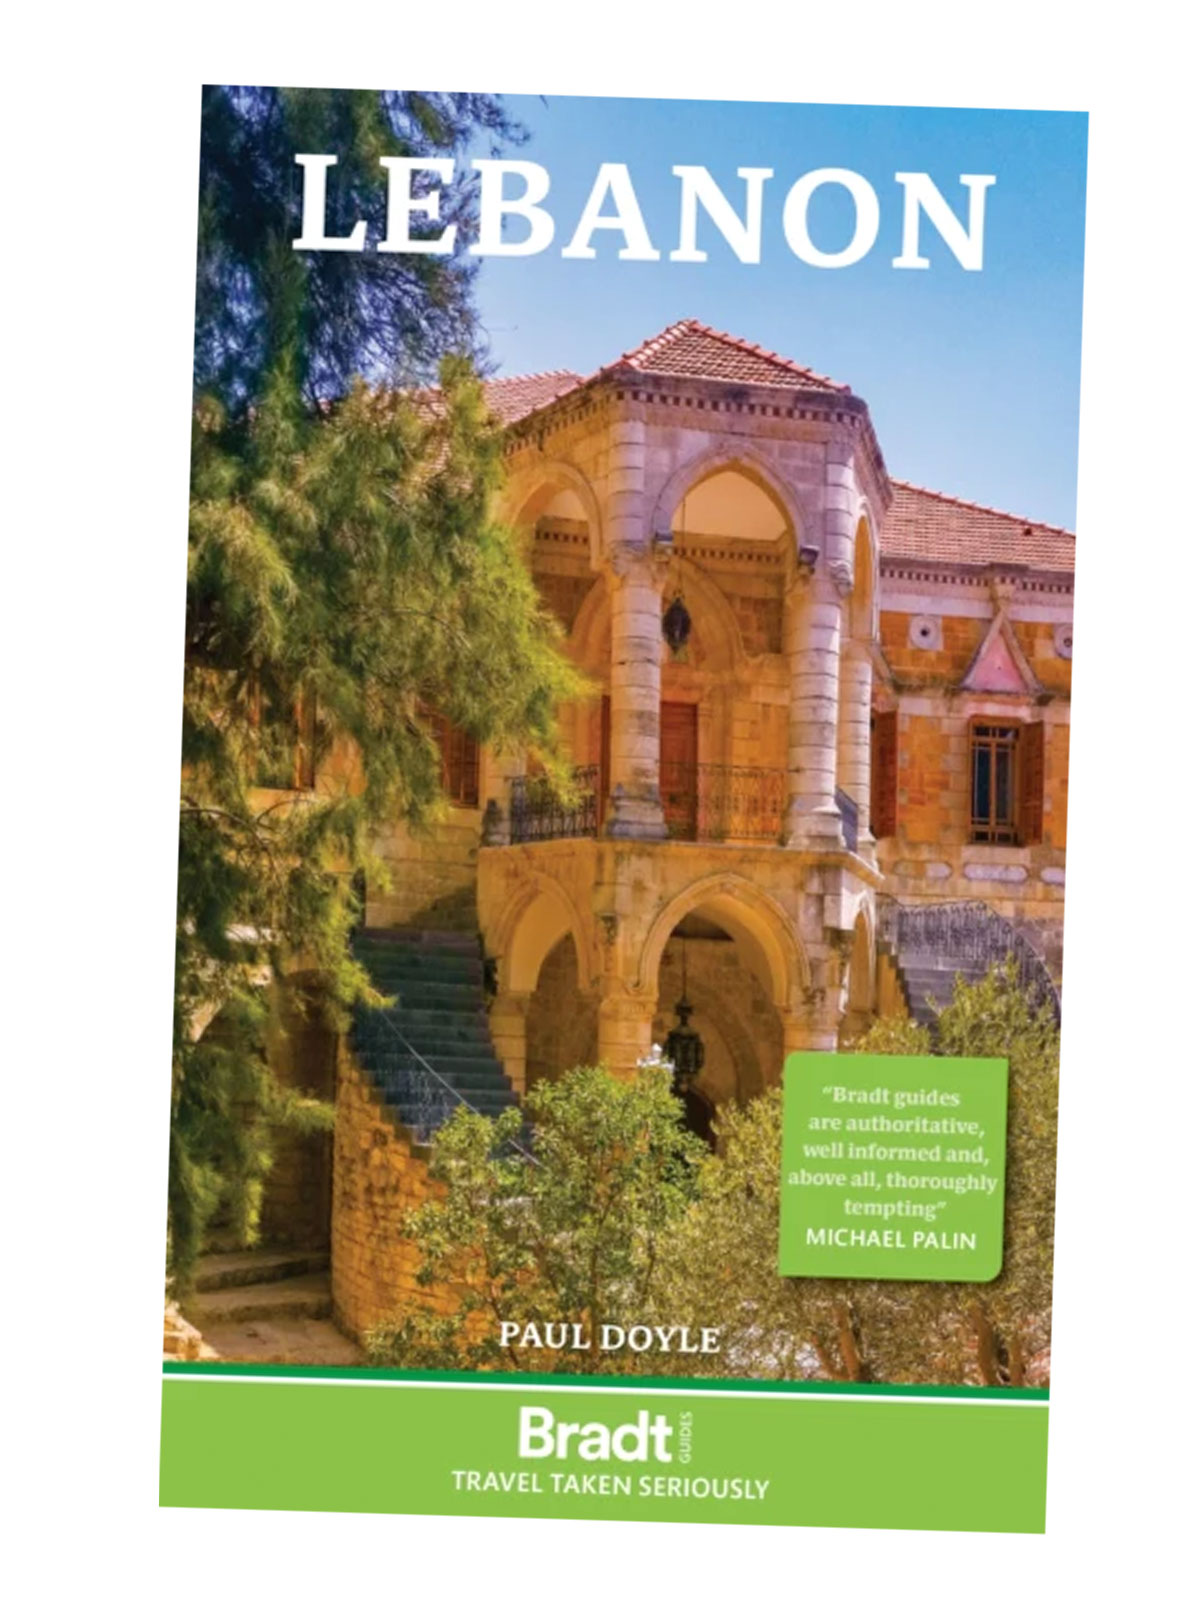 Lebanon reiseguide